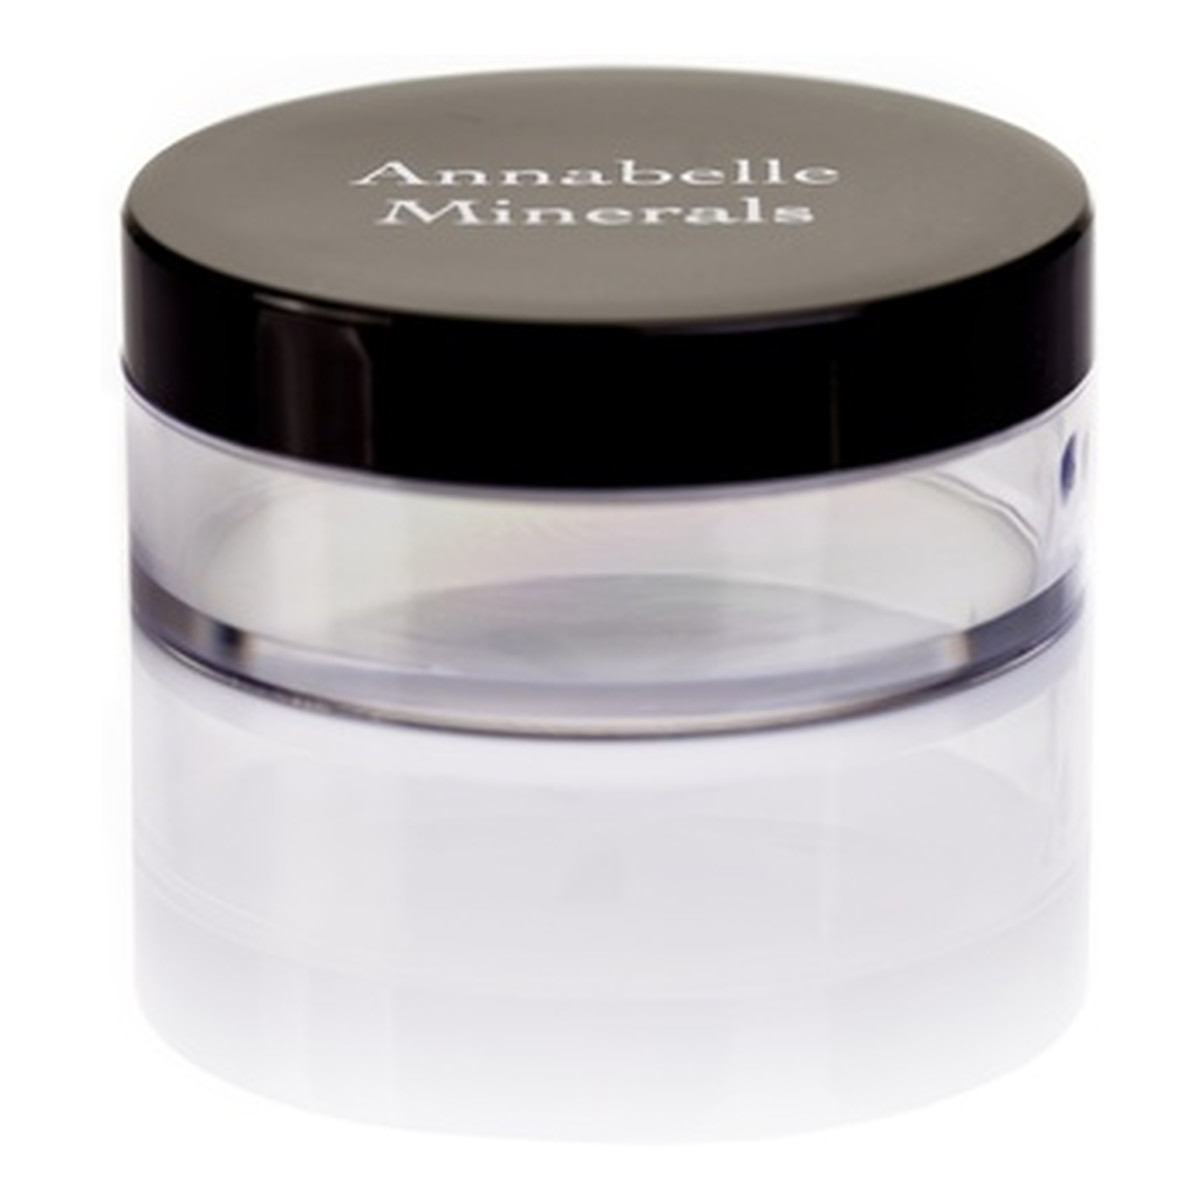 Annabelle Minerals Słoiczek do mieszania kosmetyków mineralnych